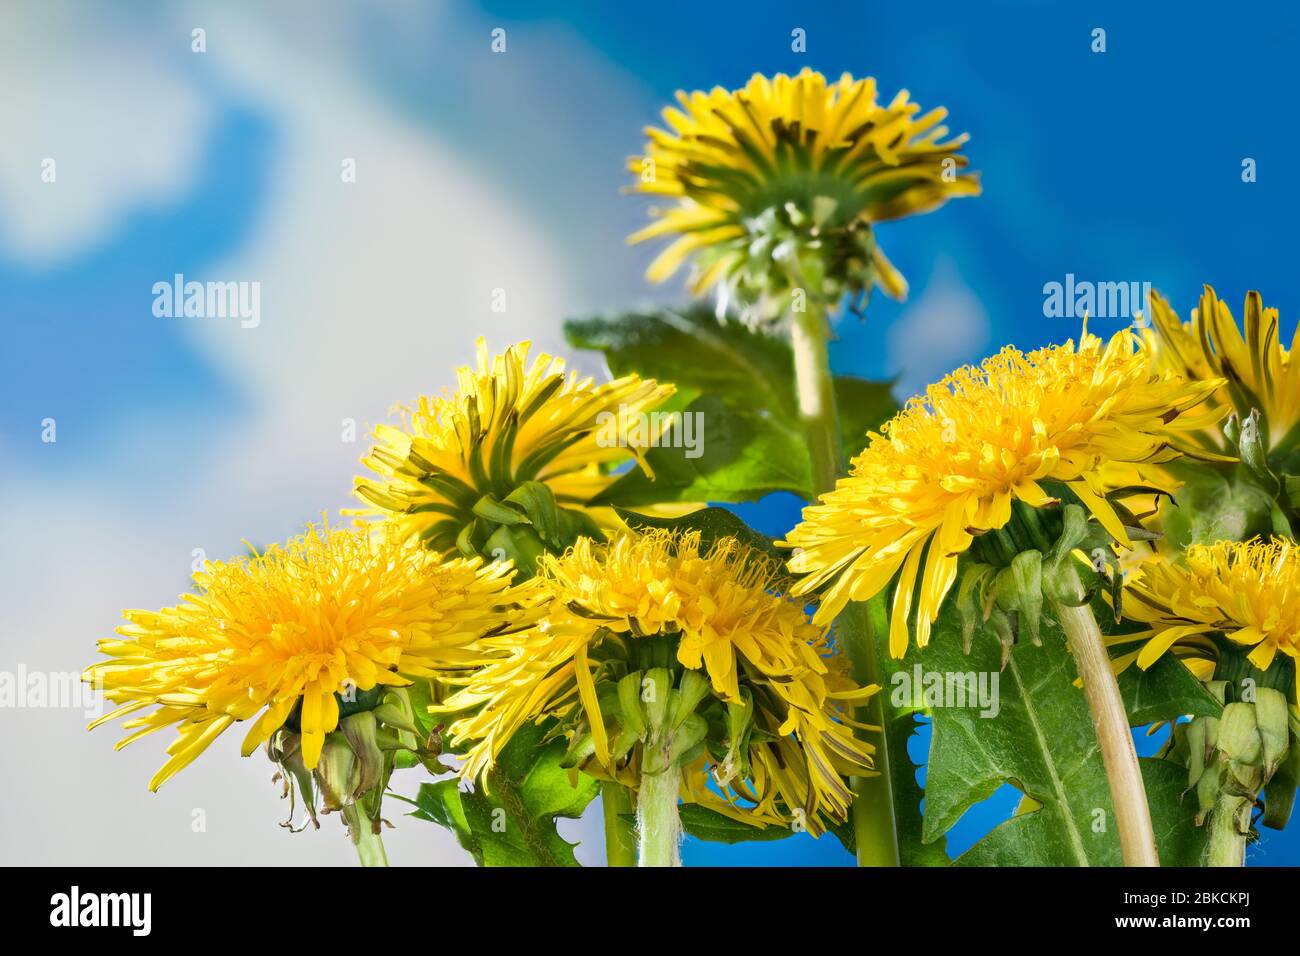 Nahaufnahme des Löwenzahns blüht auf blauem Himmel Hintergrund. Taraxacum officinale. Gruppe von gelben Blütenköpfen und grünen Blättern. Realistisches Frühlingskraut. Stockfoto